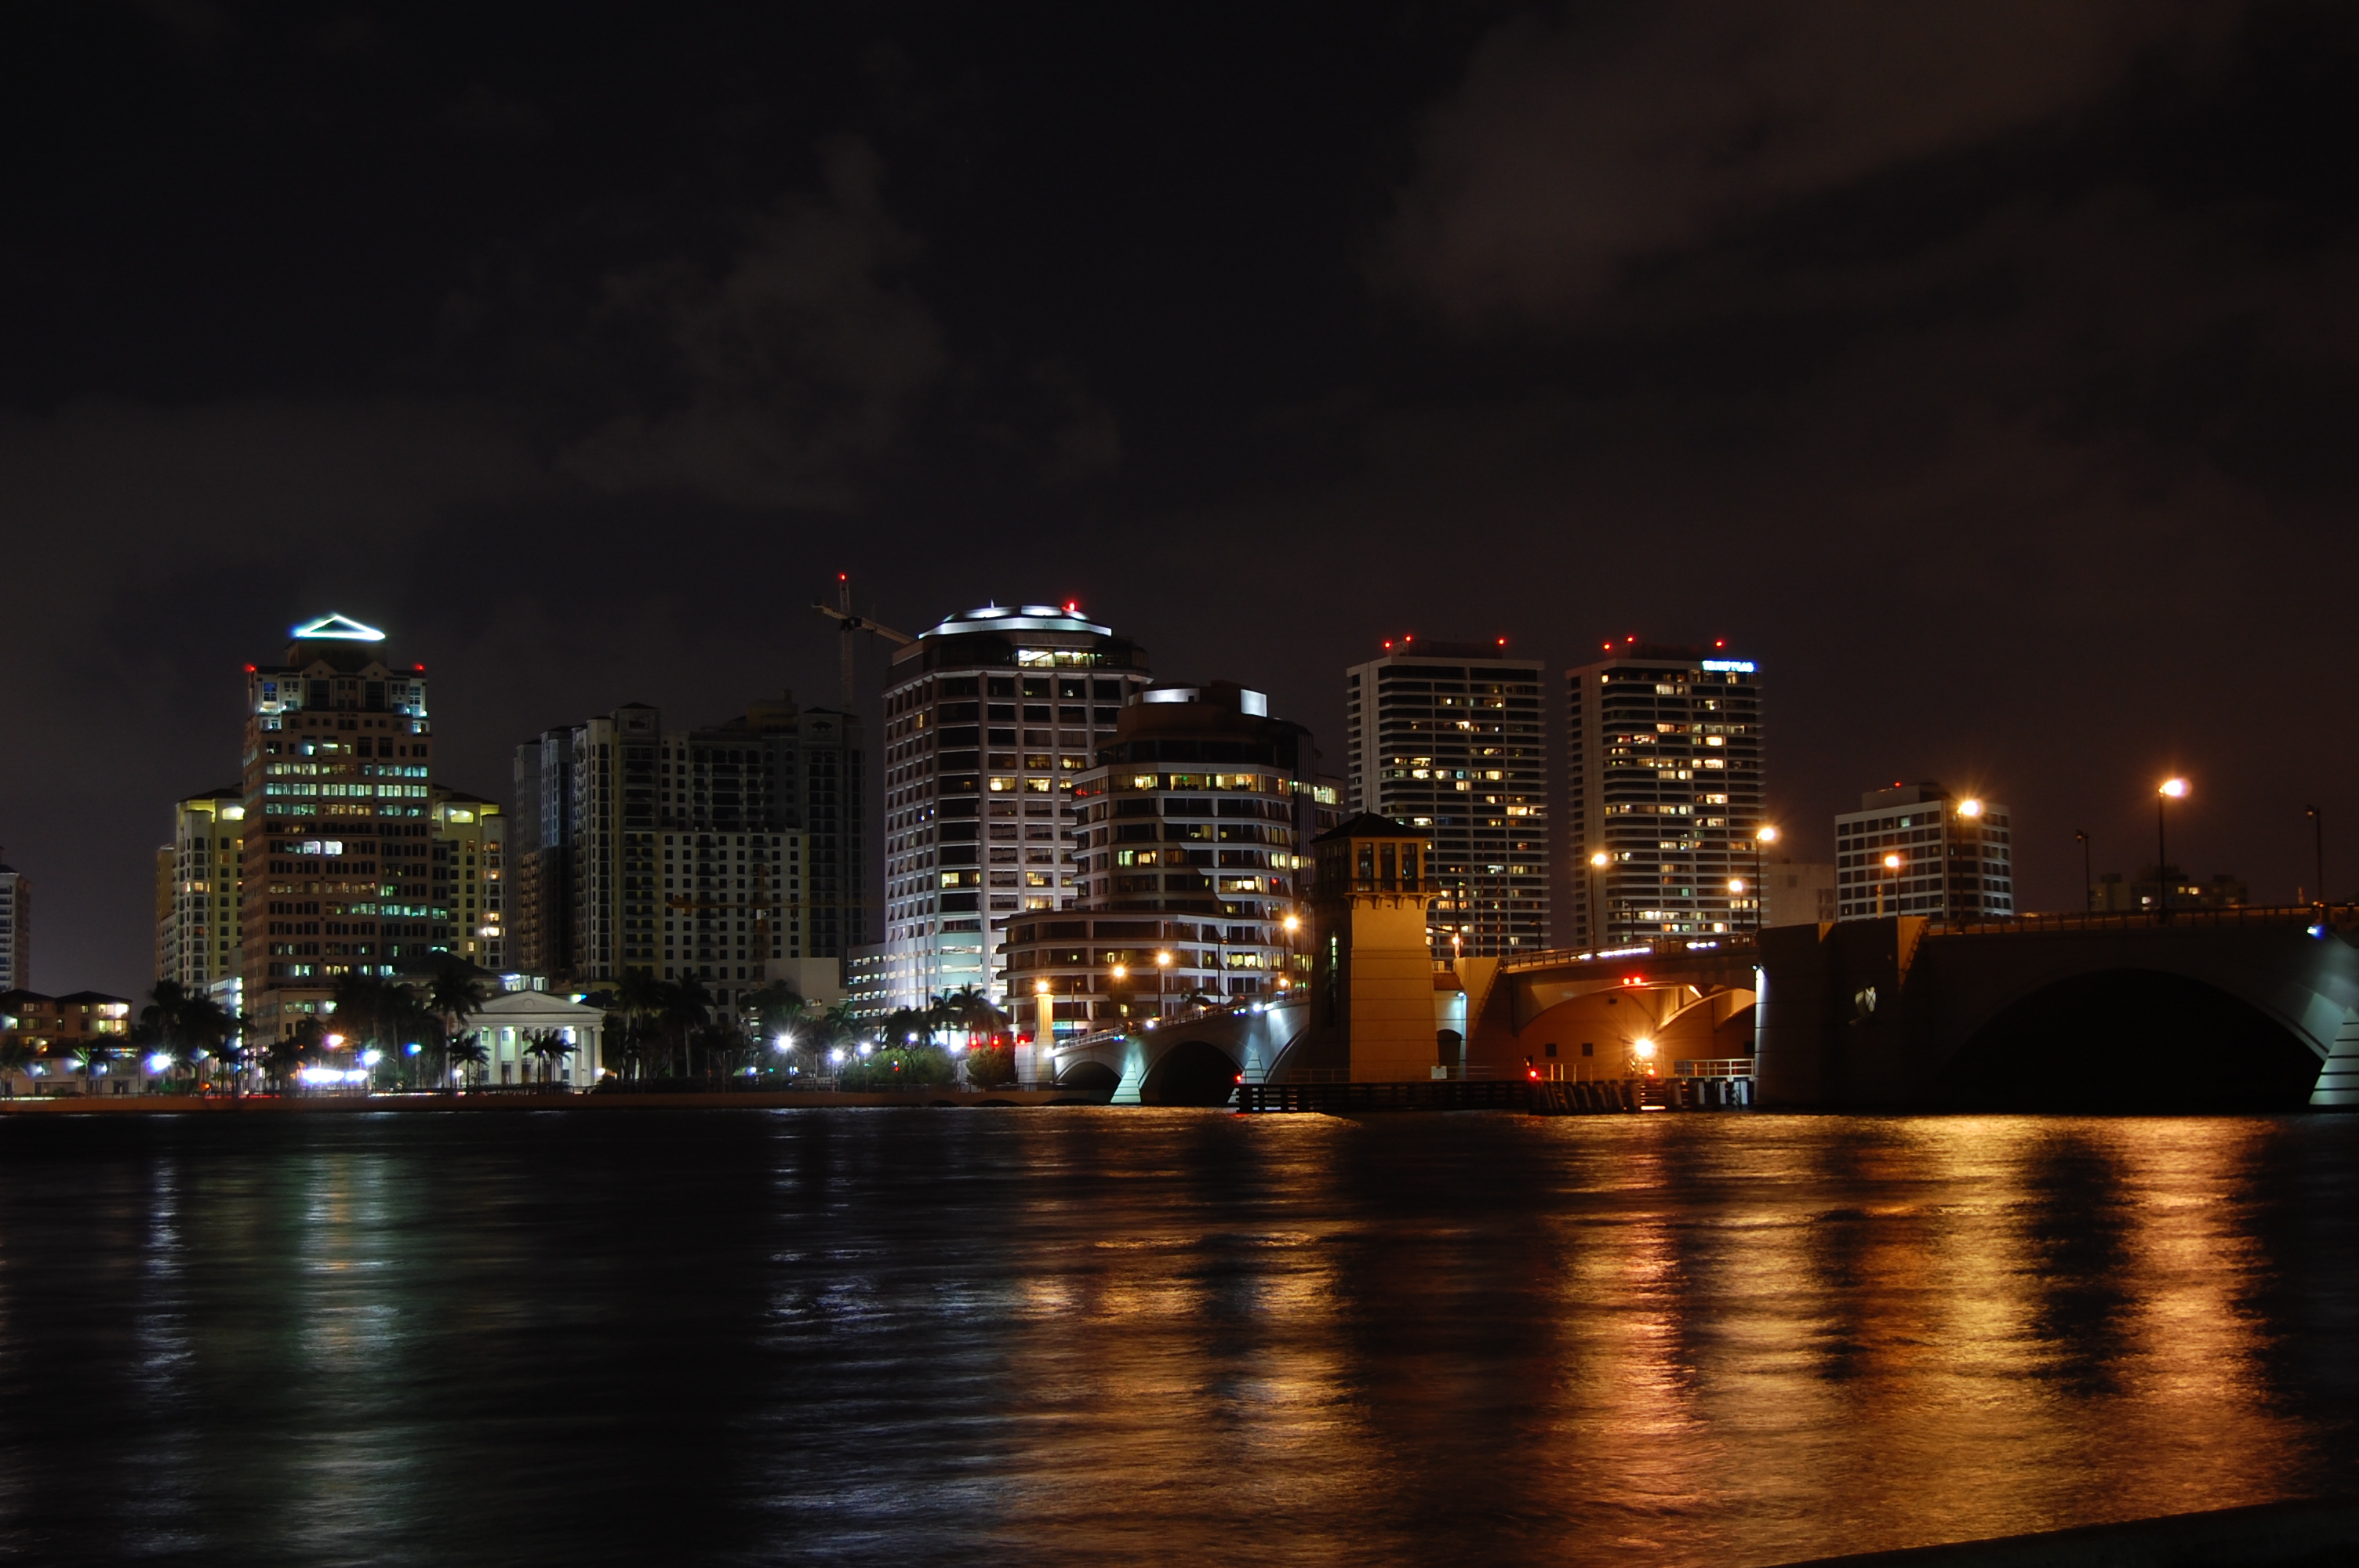 West Palm Beach skyline